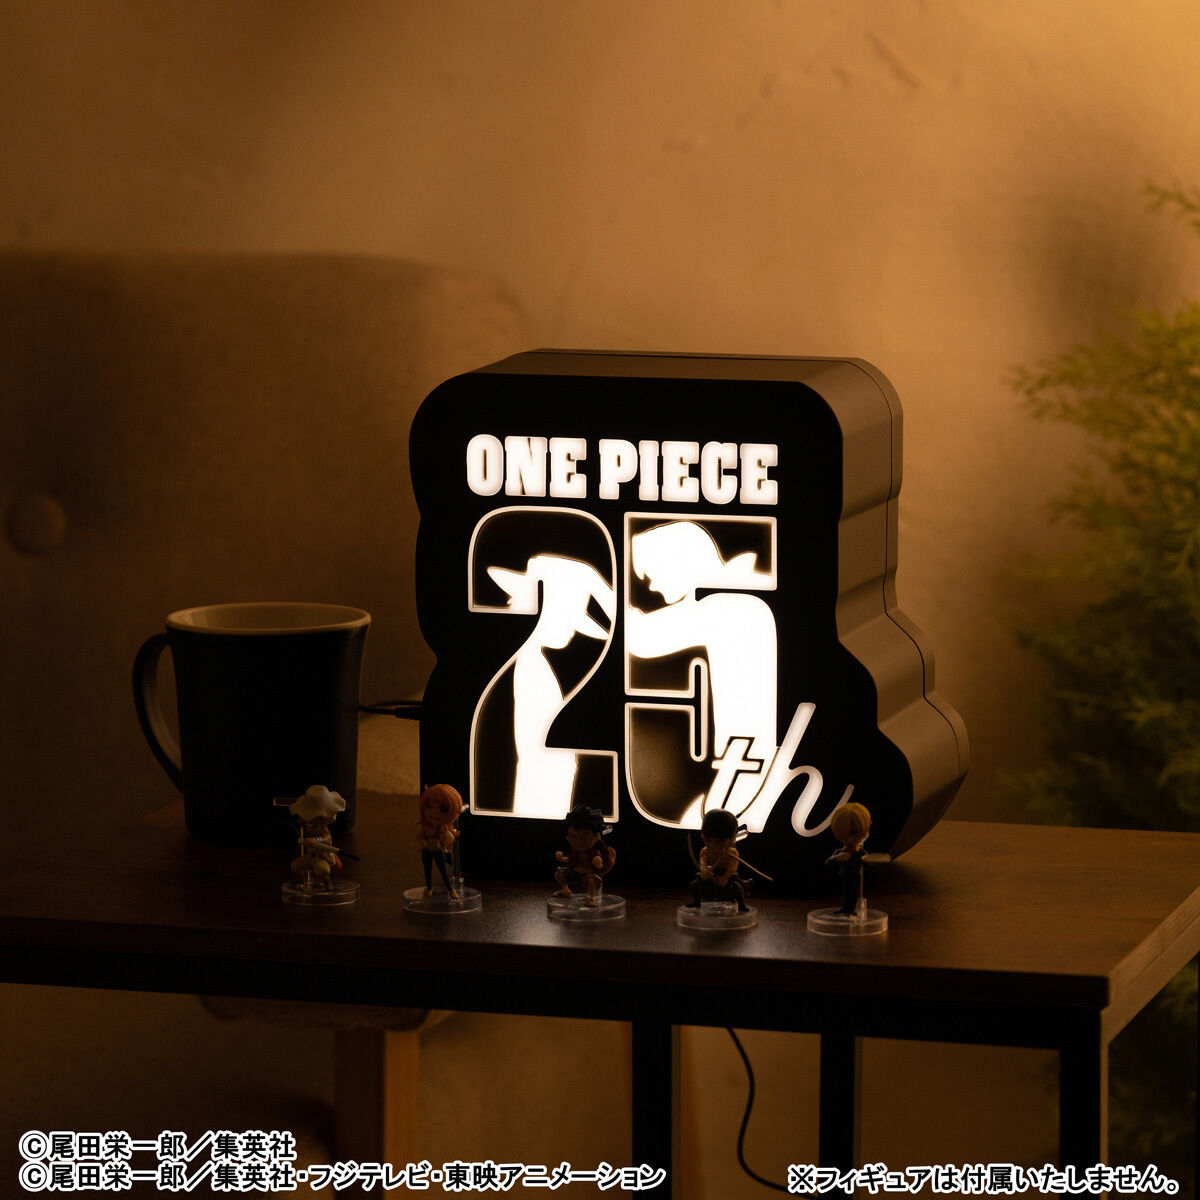 原作「ONE PIECE」25周年ロゴライトスタンド-BLACK- | ONE PIECE